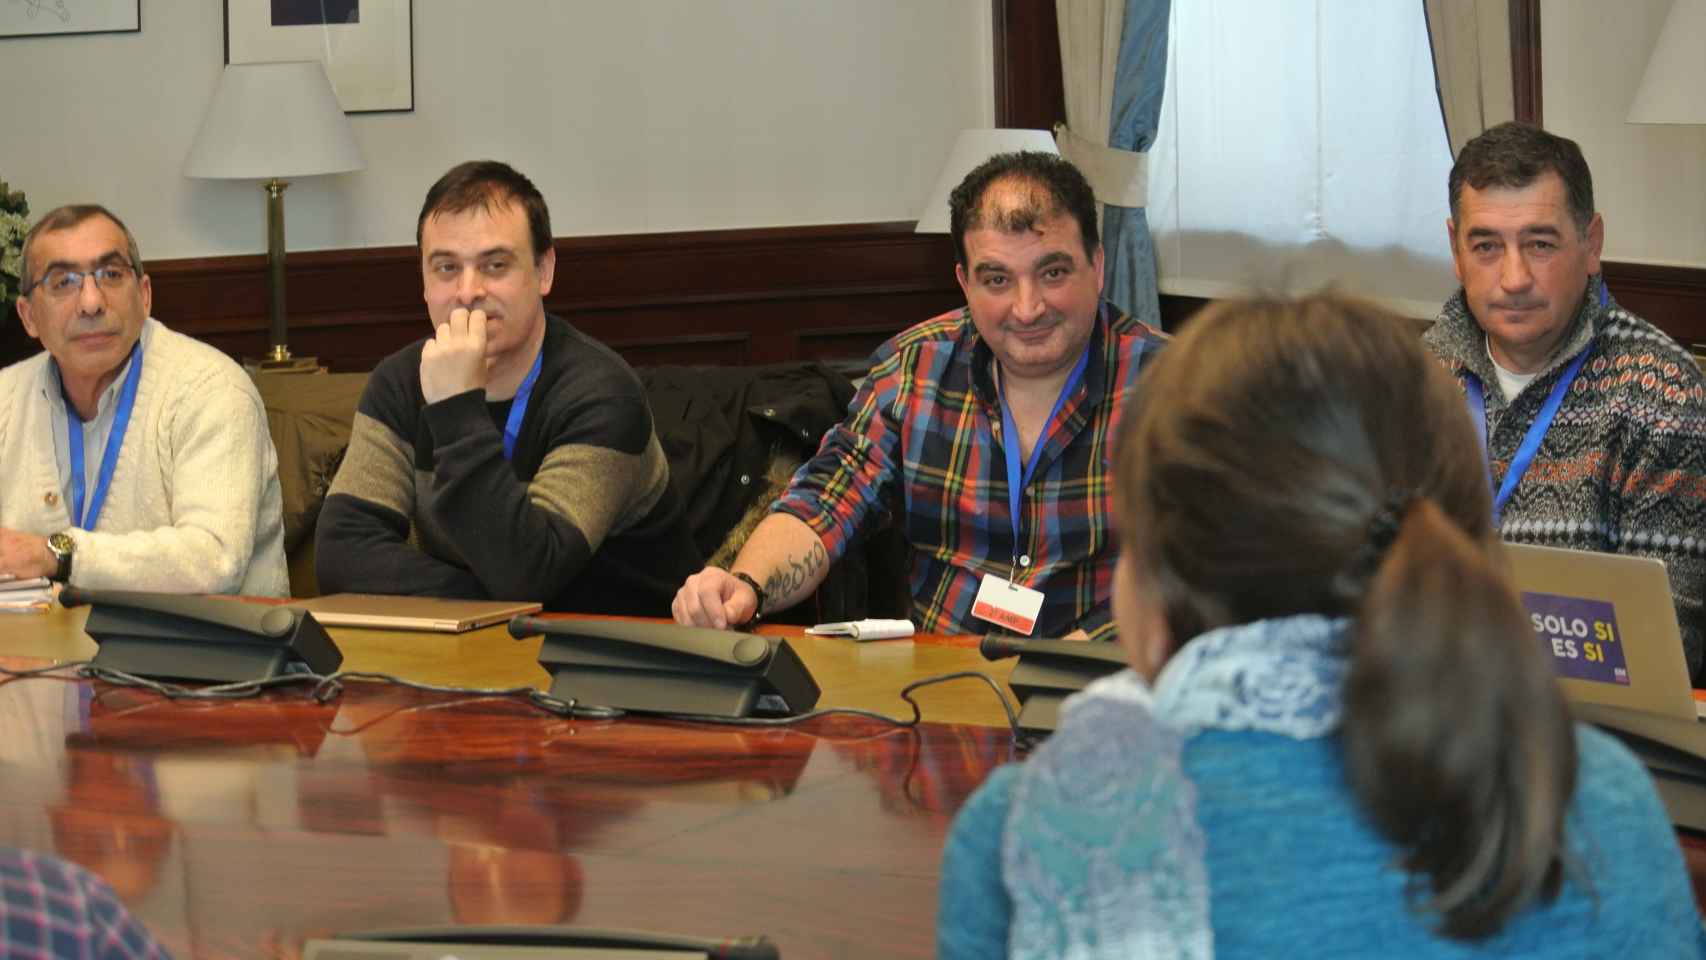 Trabajadores de subcontratas mineras reunidos con los diputados de Podemos en una sala del Congreso.